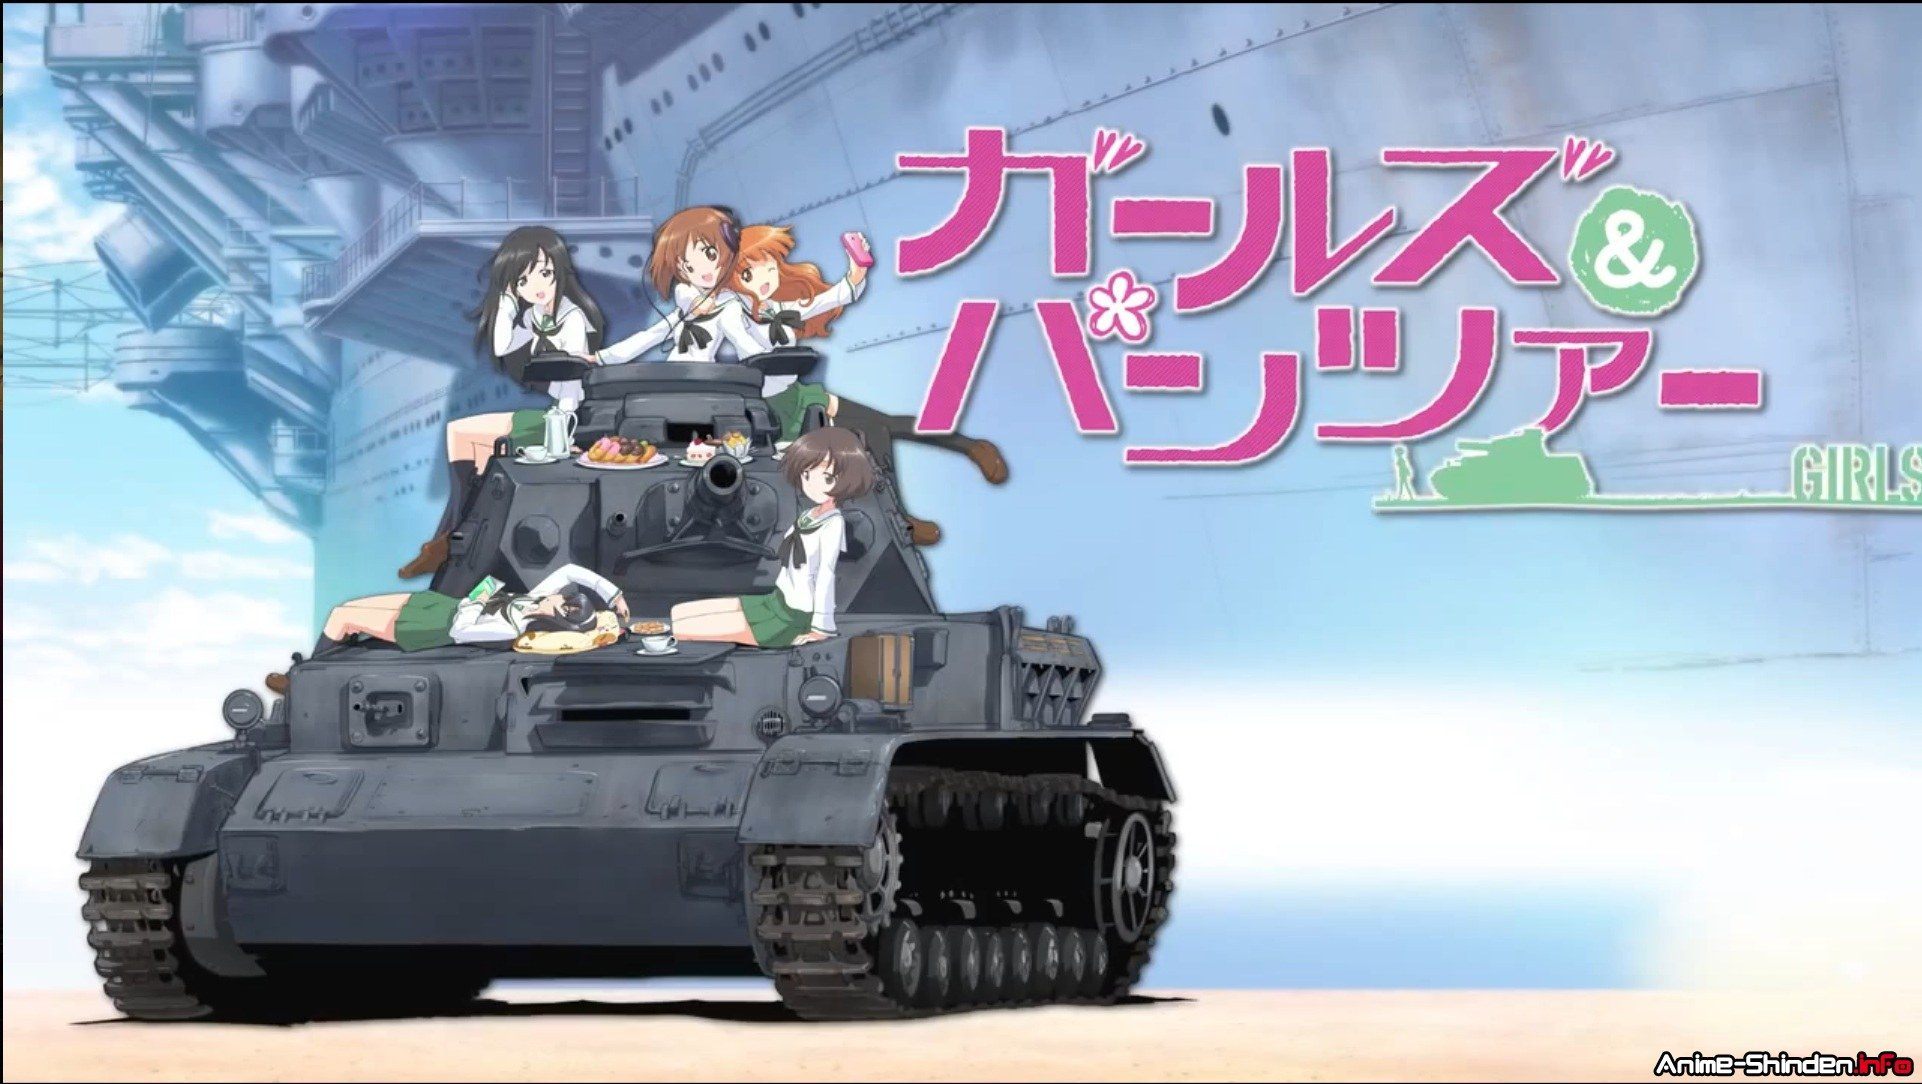 Czołgi i dziewczyny w spódniczkach, czyli anime Girls und Panzer. - World of Tanks ukaże się w Japonii. Tamtejsza wersja zostanie połączona z anime Girls und Panzer - wiadomość - 2013-07-30